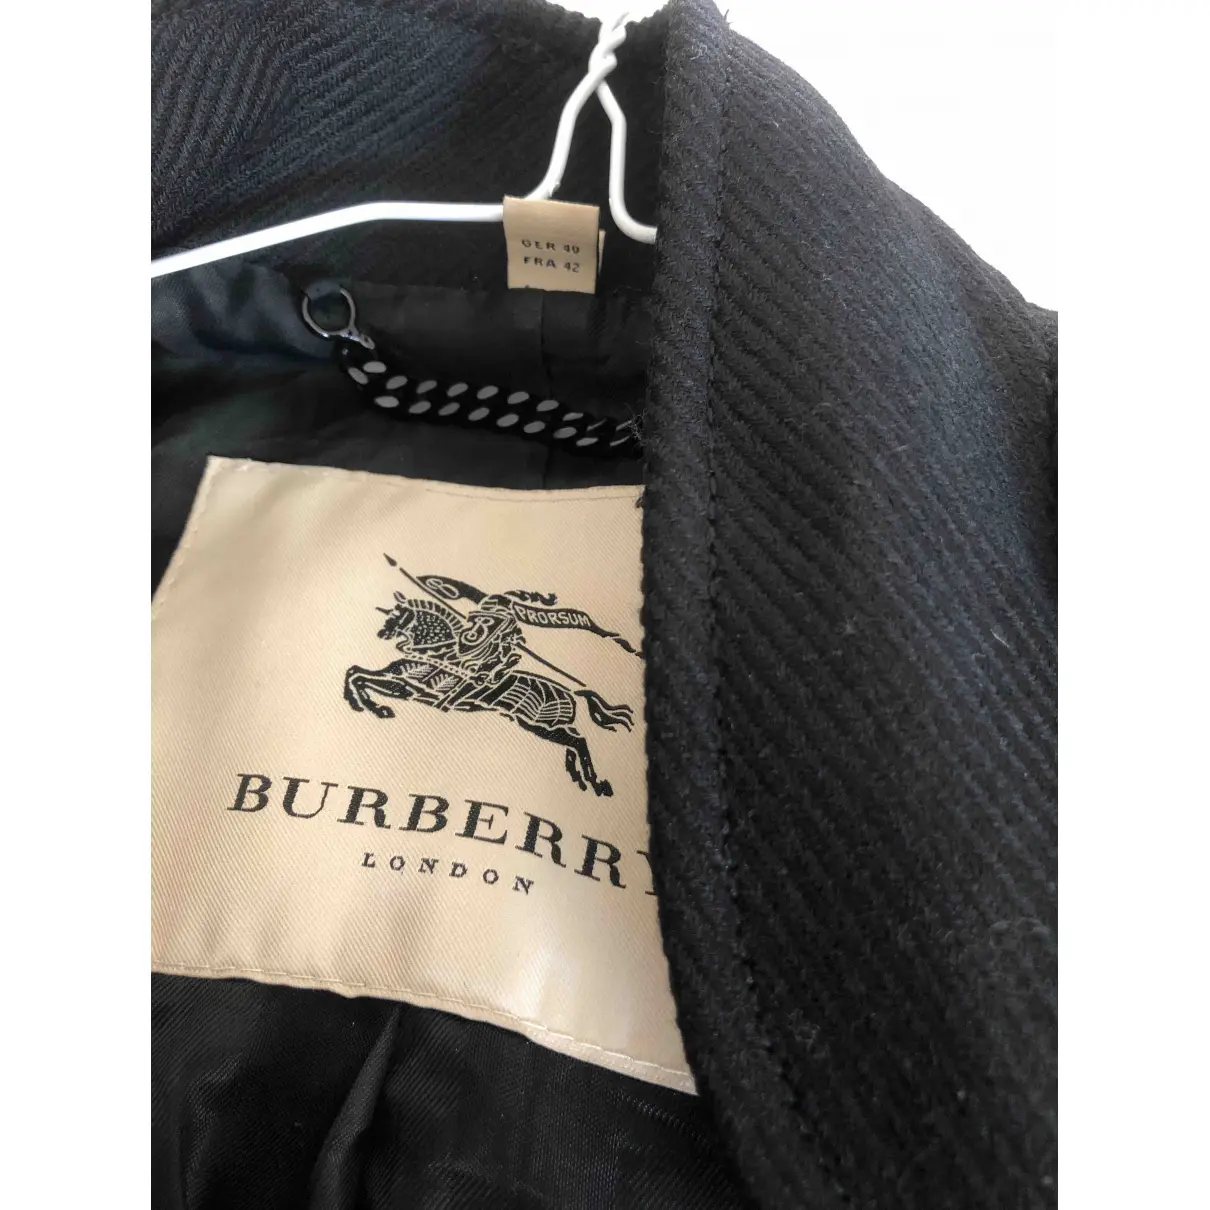 Buy Burberry Wool trench coat online